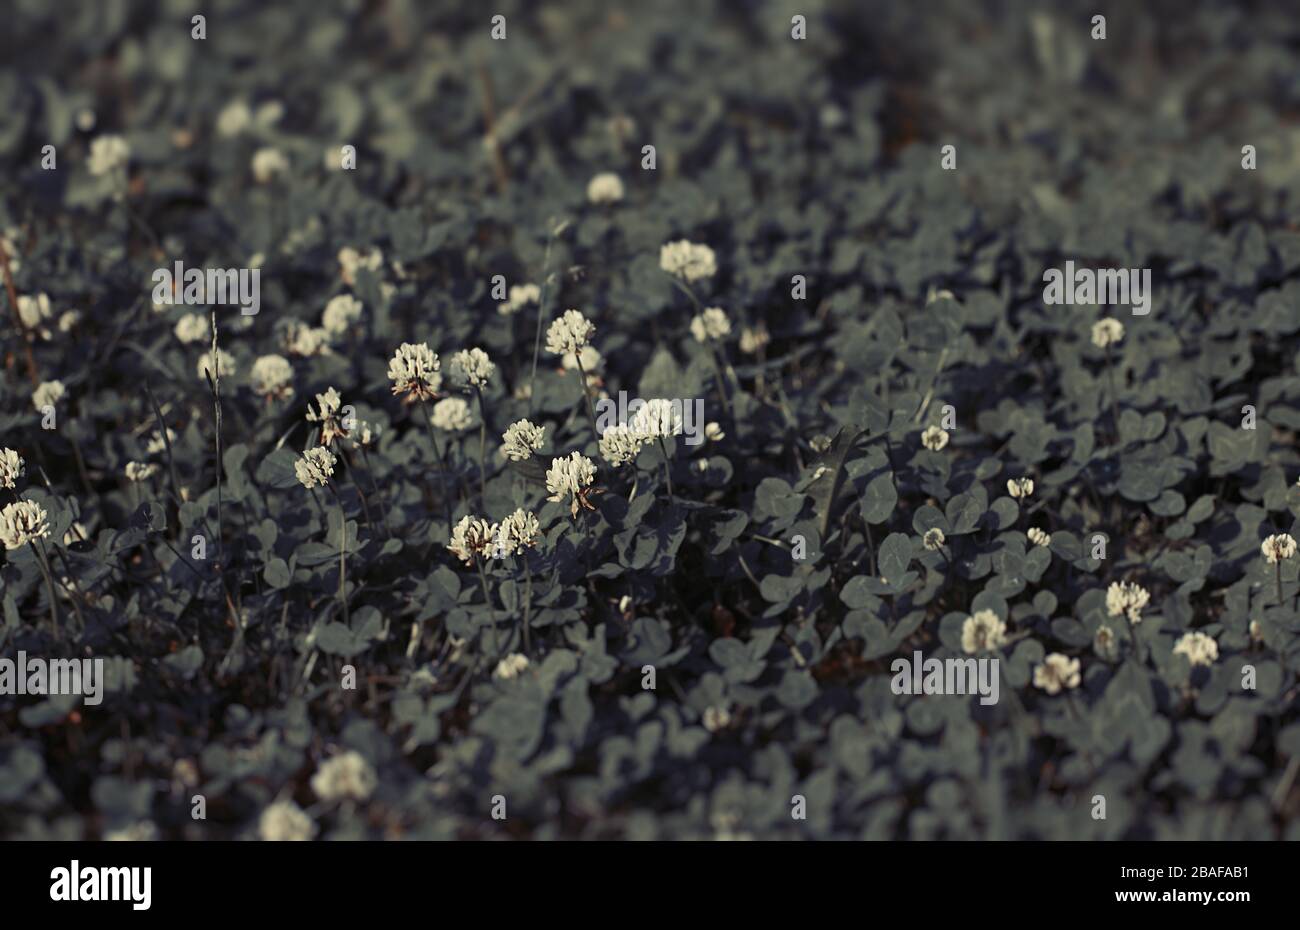 Trèfle romantique ou arrière-plan shamrock Meadow. Traitement nostalgique, tons vintage, style 35 mm. Texture naturelle. Banque D'Images